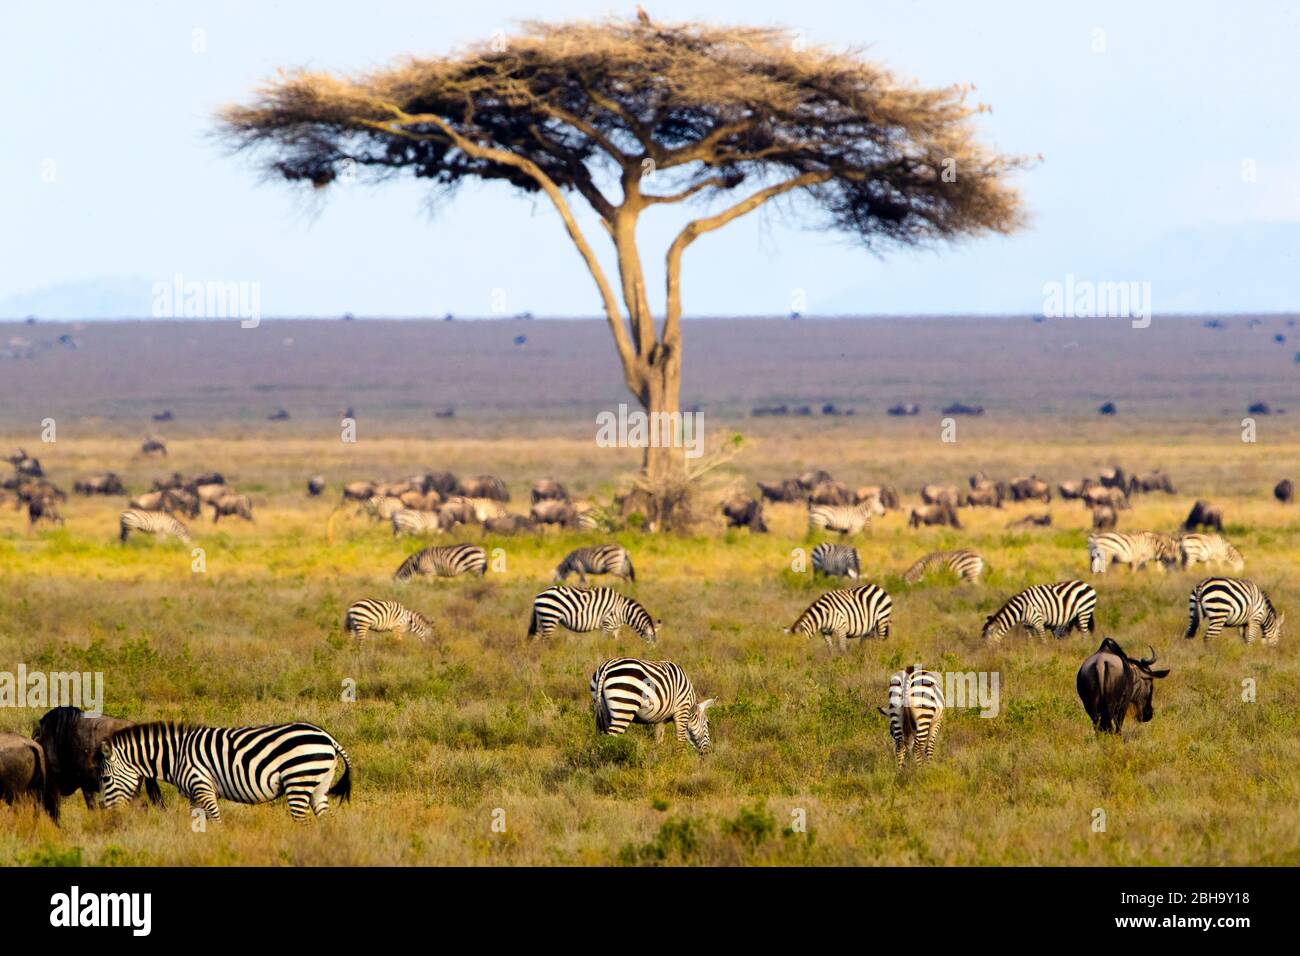 Vista de la Gran migración de animales en Savannah, Área de Conservación de Ngorongoro, Tanzania, África Foto de stock